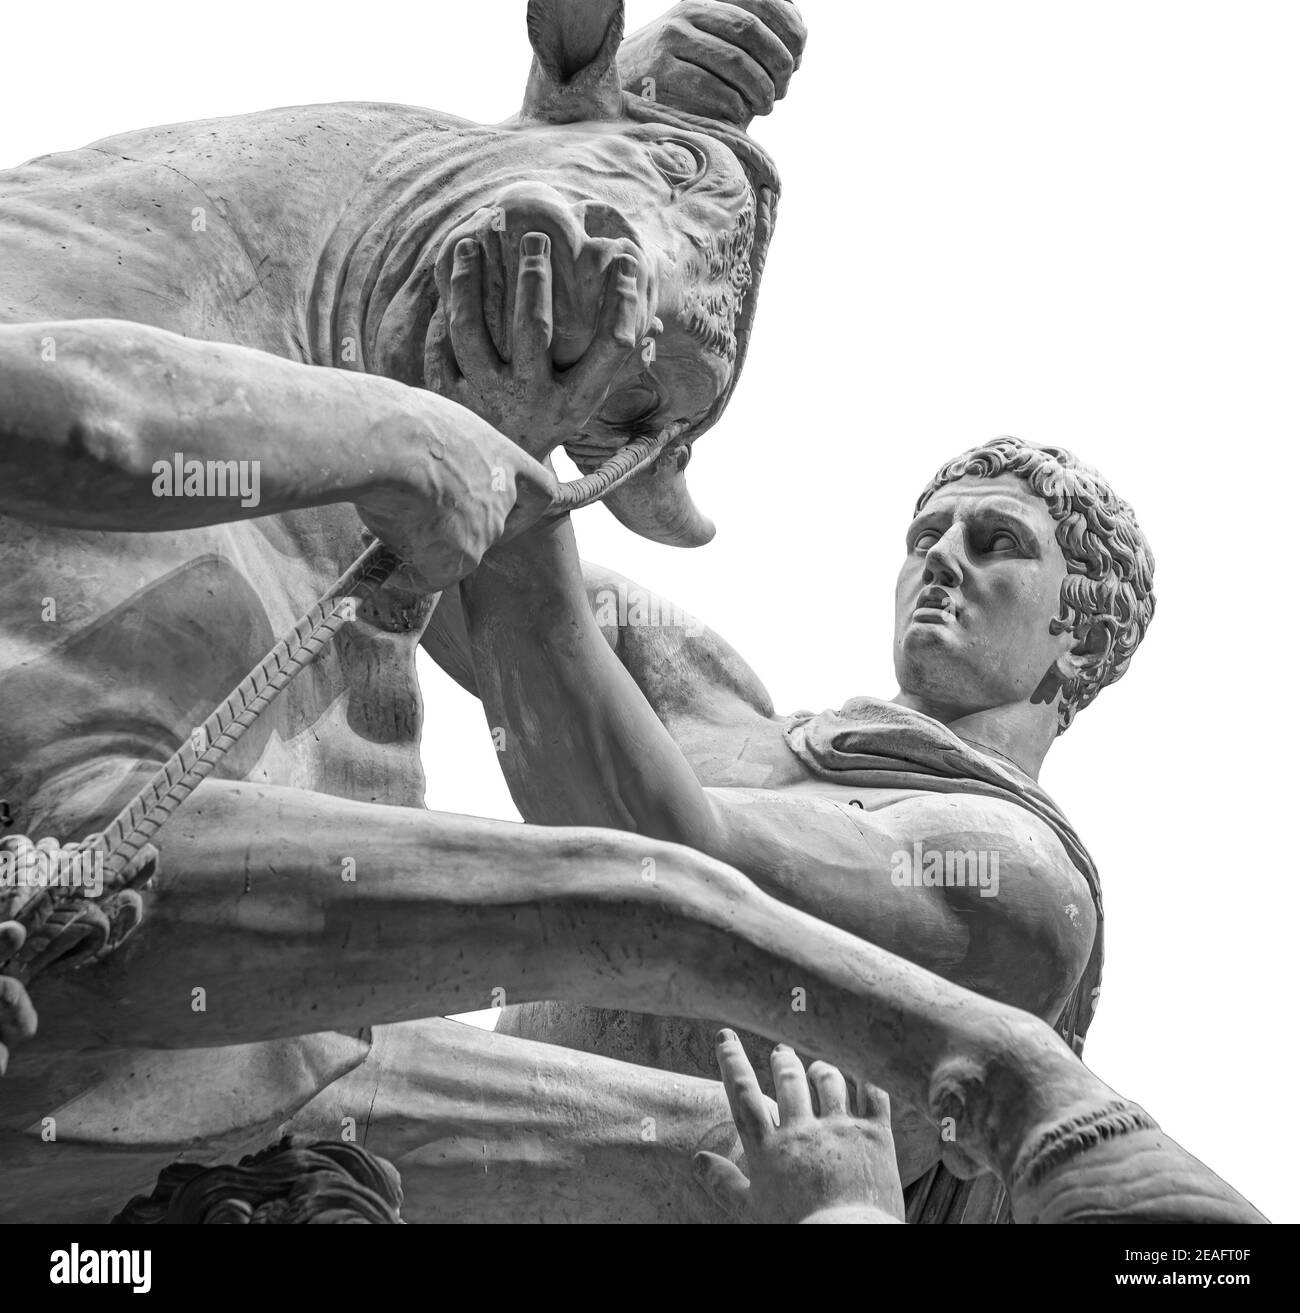 Hercules combattant le taureau crétois ou statue du dieu Mithras tuant un taureau. Sculpture en pierre isolée sur fond blanc Banque D'Images